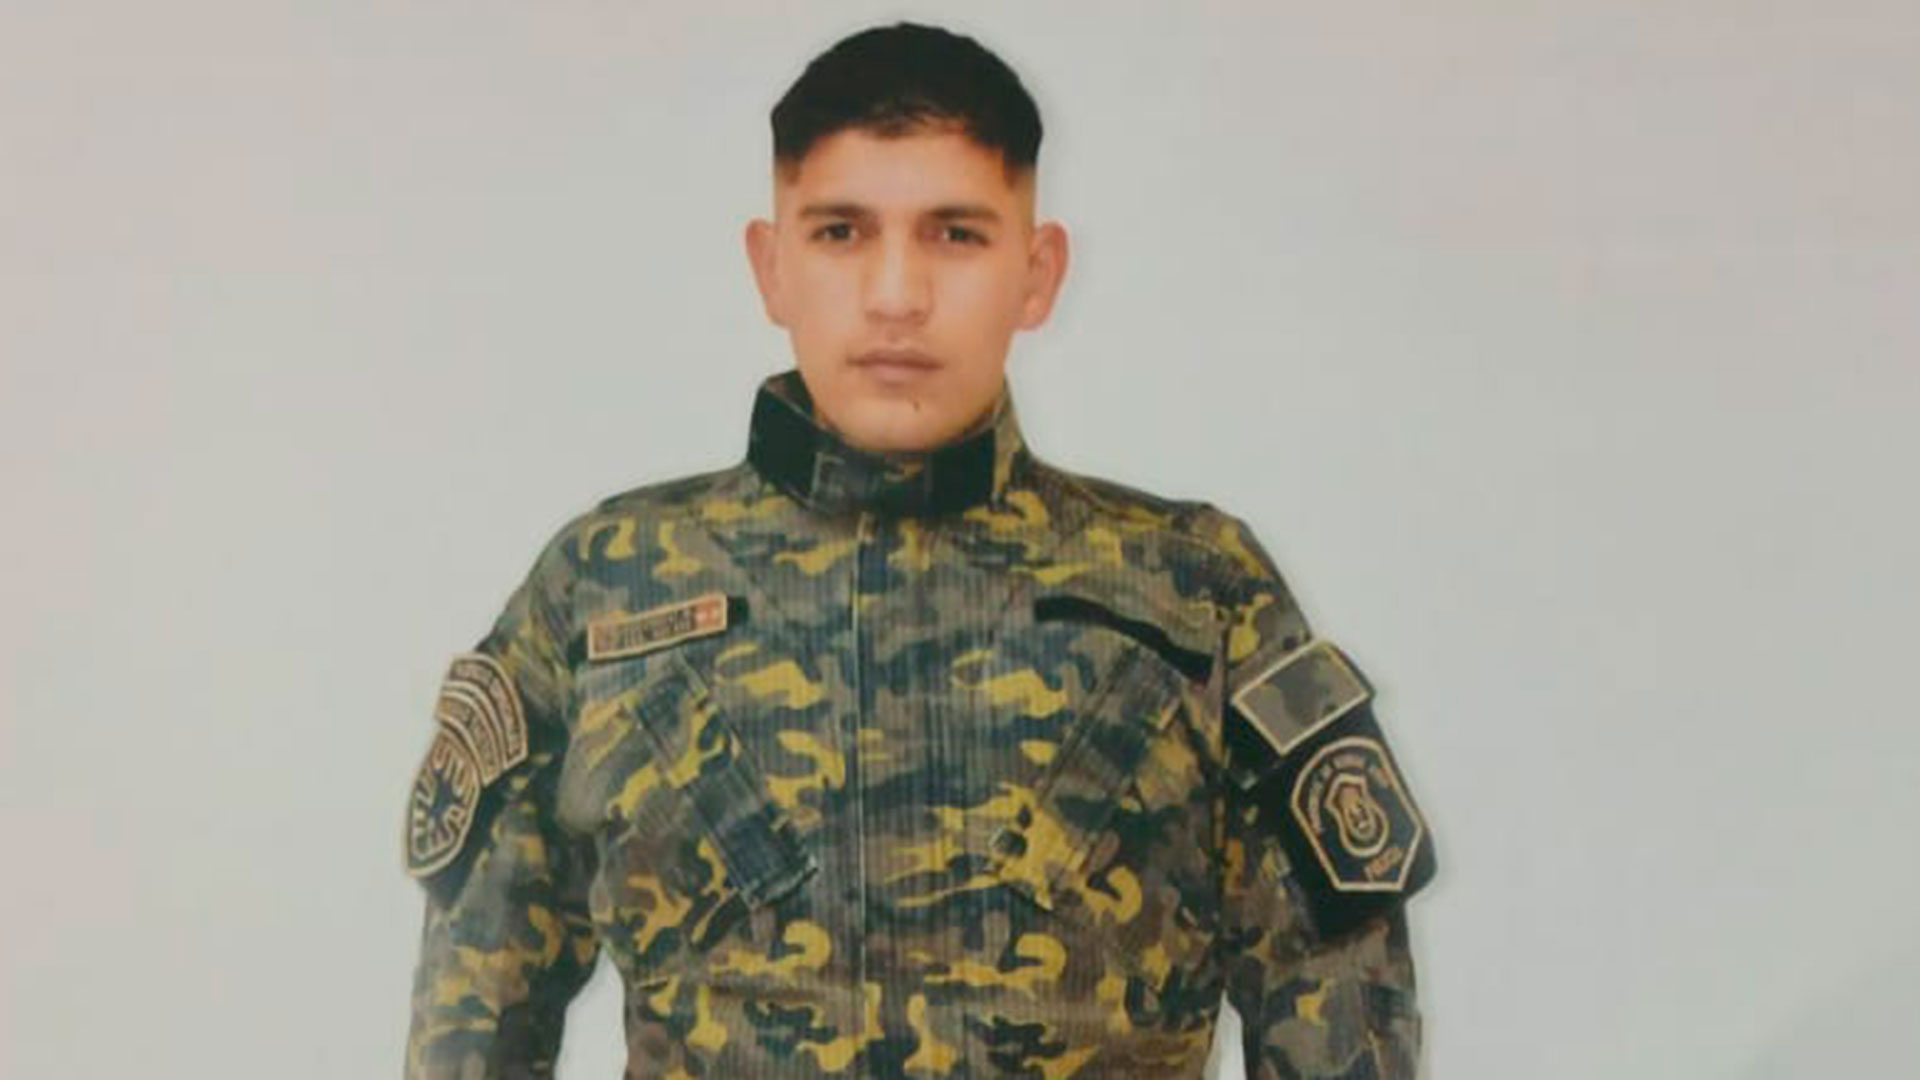 Nazareno Benjamín Zucarelli en uniforme